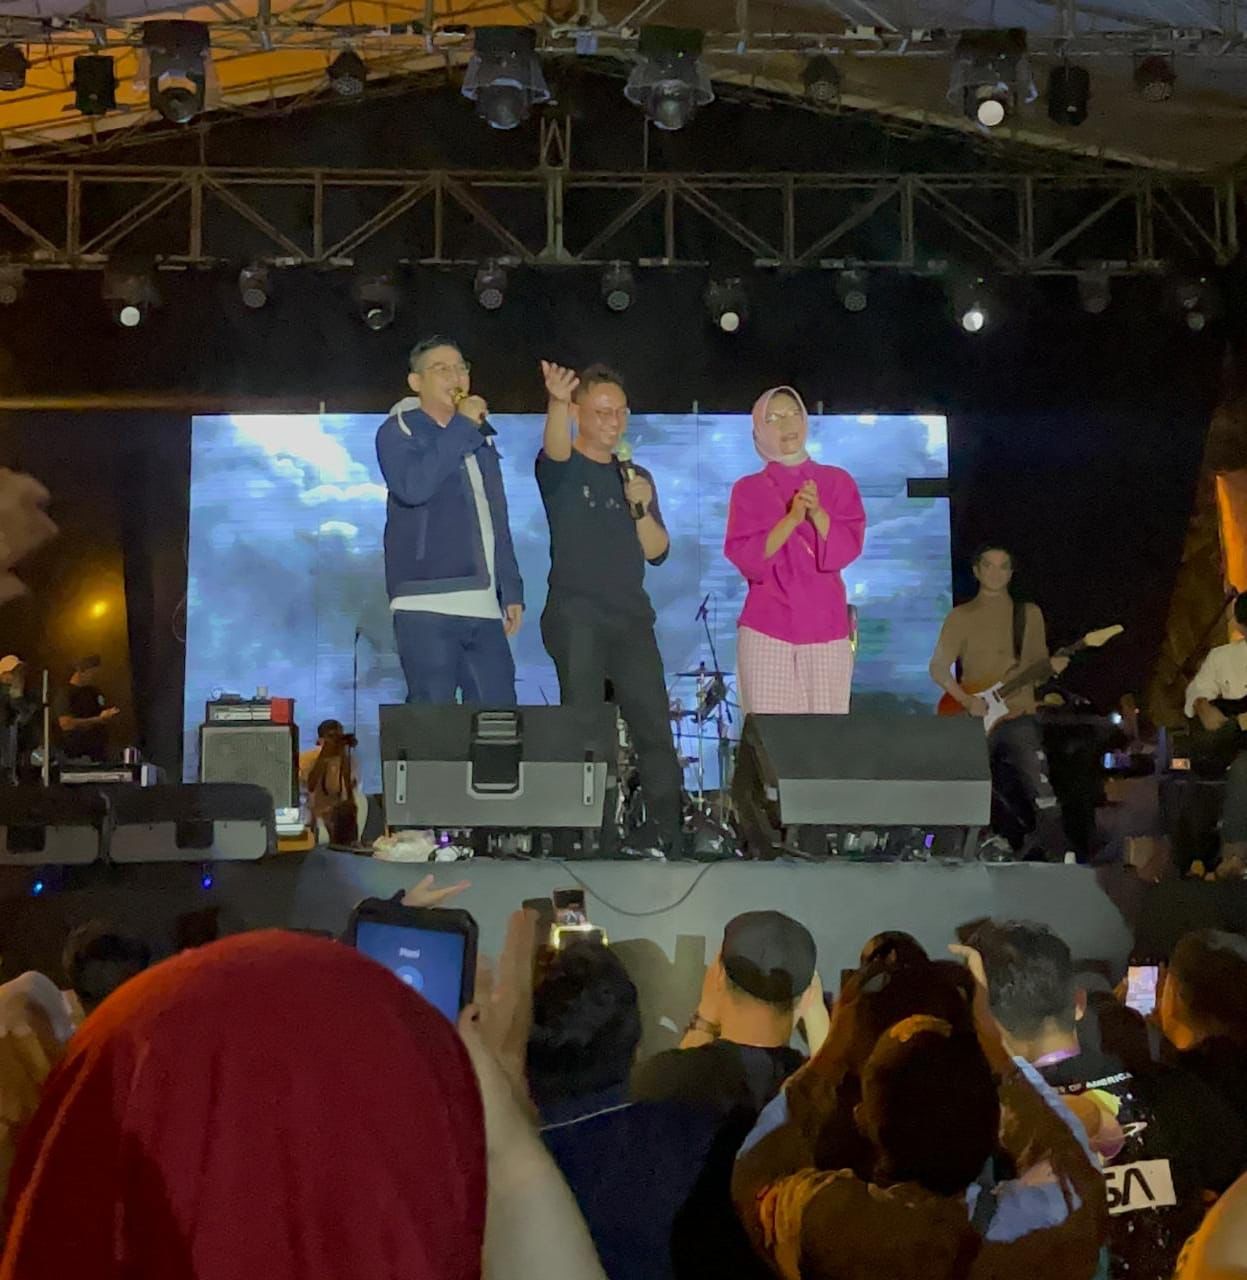 Wali Kota Pontianak, Edi Rusdi Kamtono berduet bersama Pasha Ungu menyanyikan lagu "Tercipta Untukku" pada acara Pontianak Music Fest 2023. (Foto: Indri)